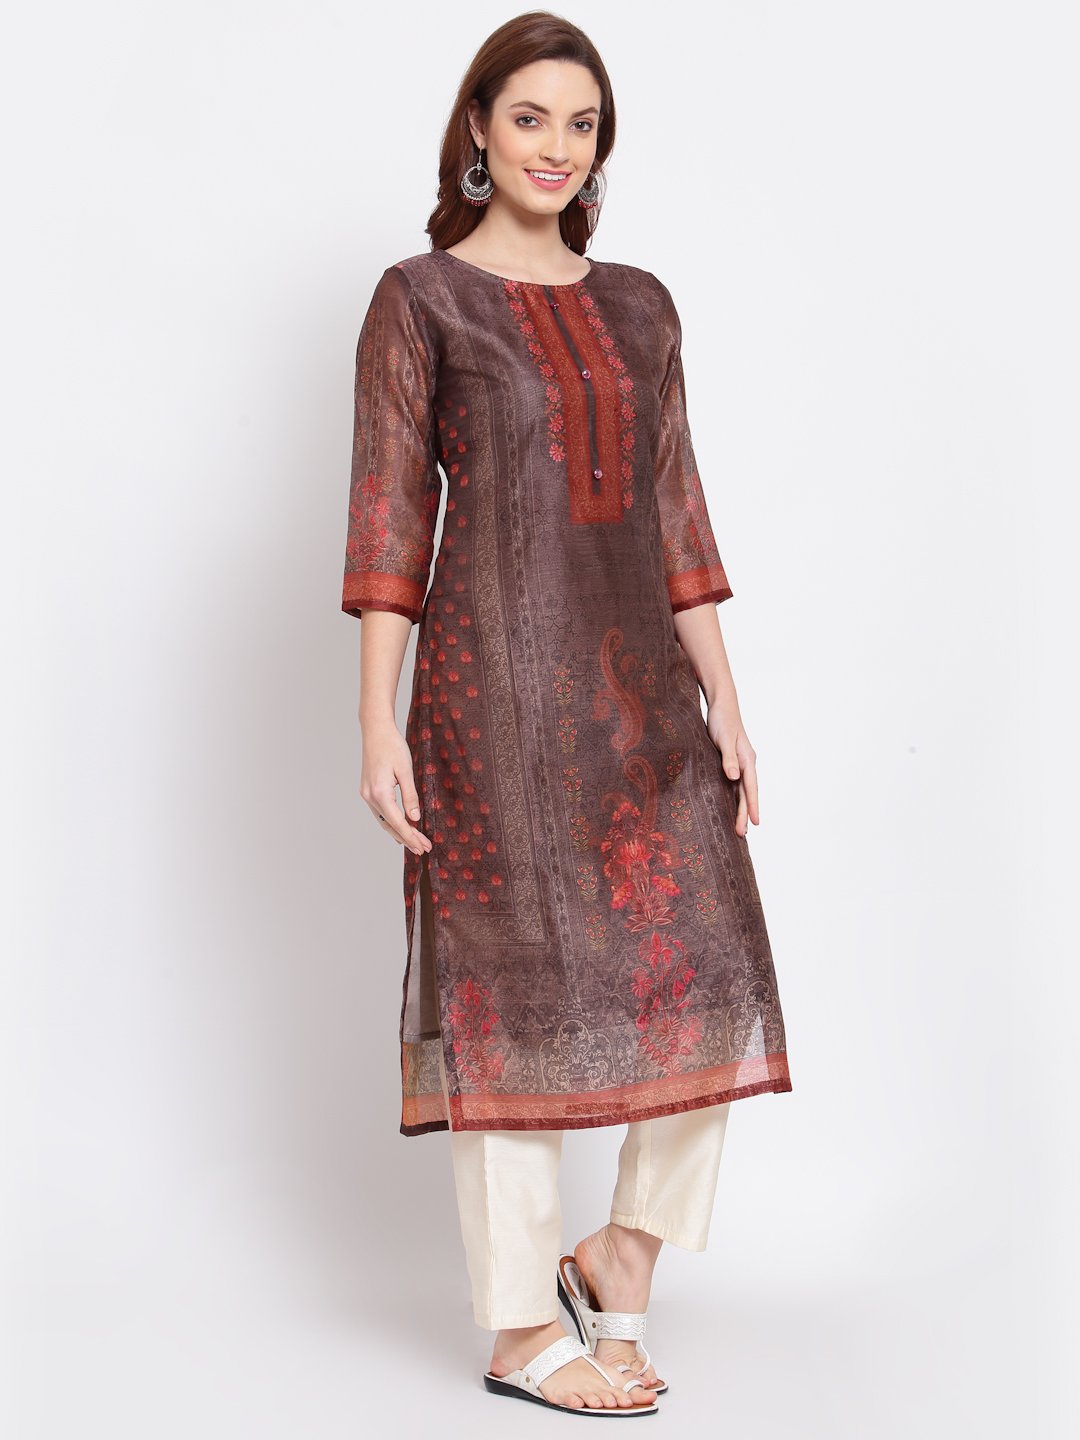 Women's Multi Printed Chanderi Silk 3/4 Sleeve Round Neck Casual Kurta - Myshka